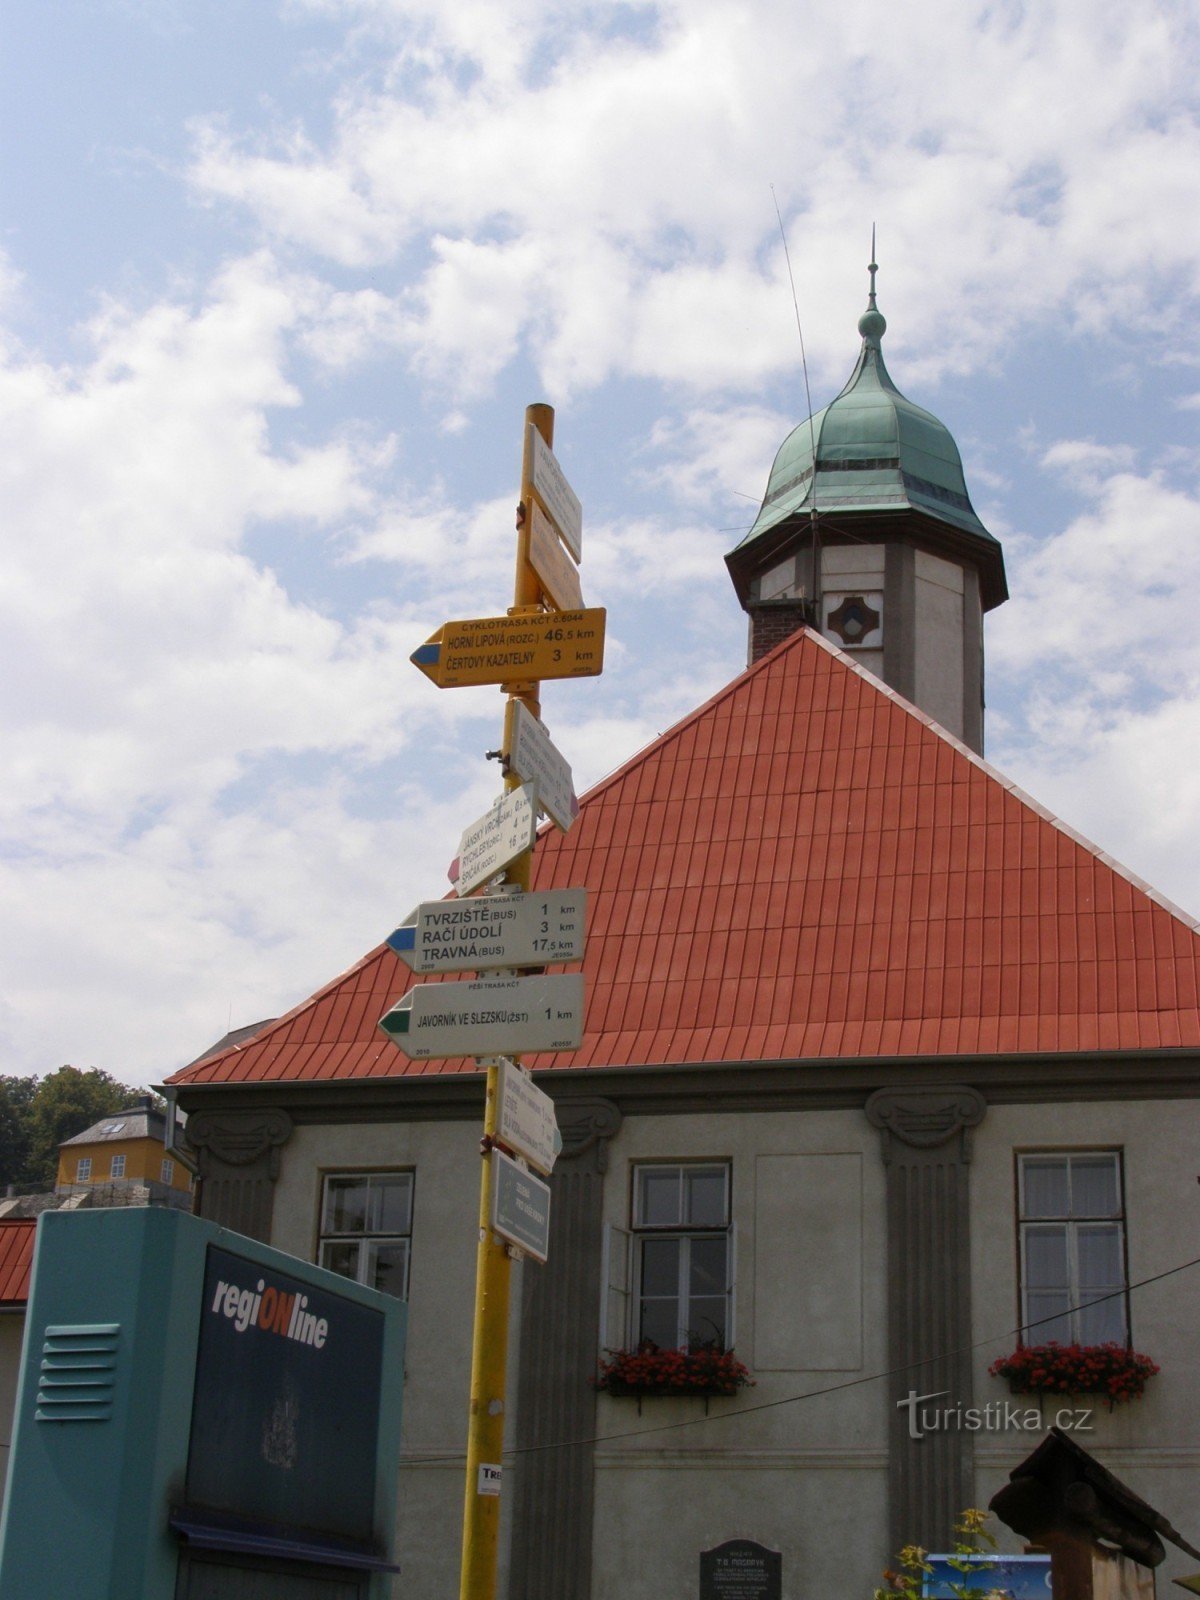 răscruce turistică Javorník - náměstí